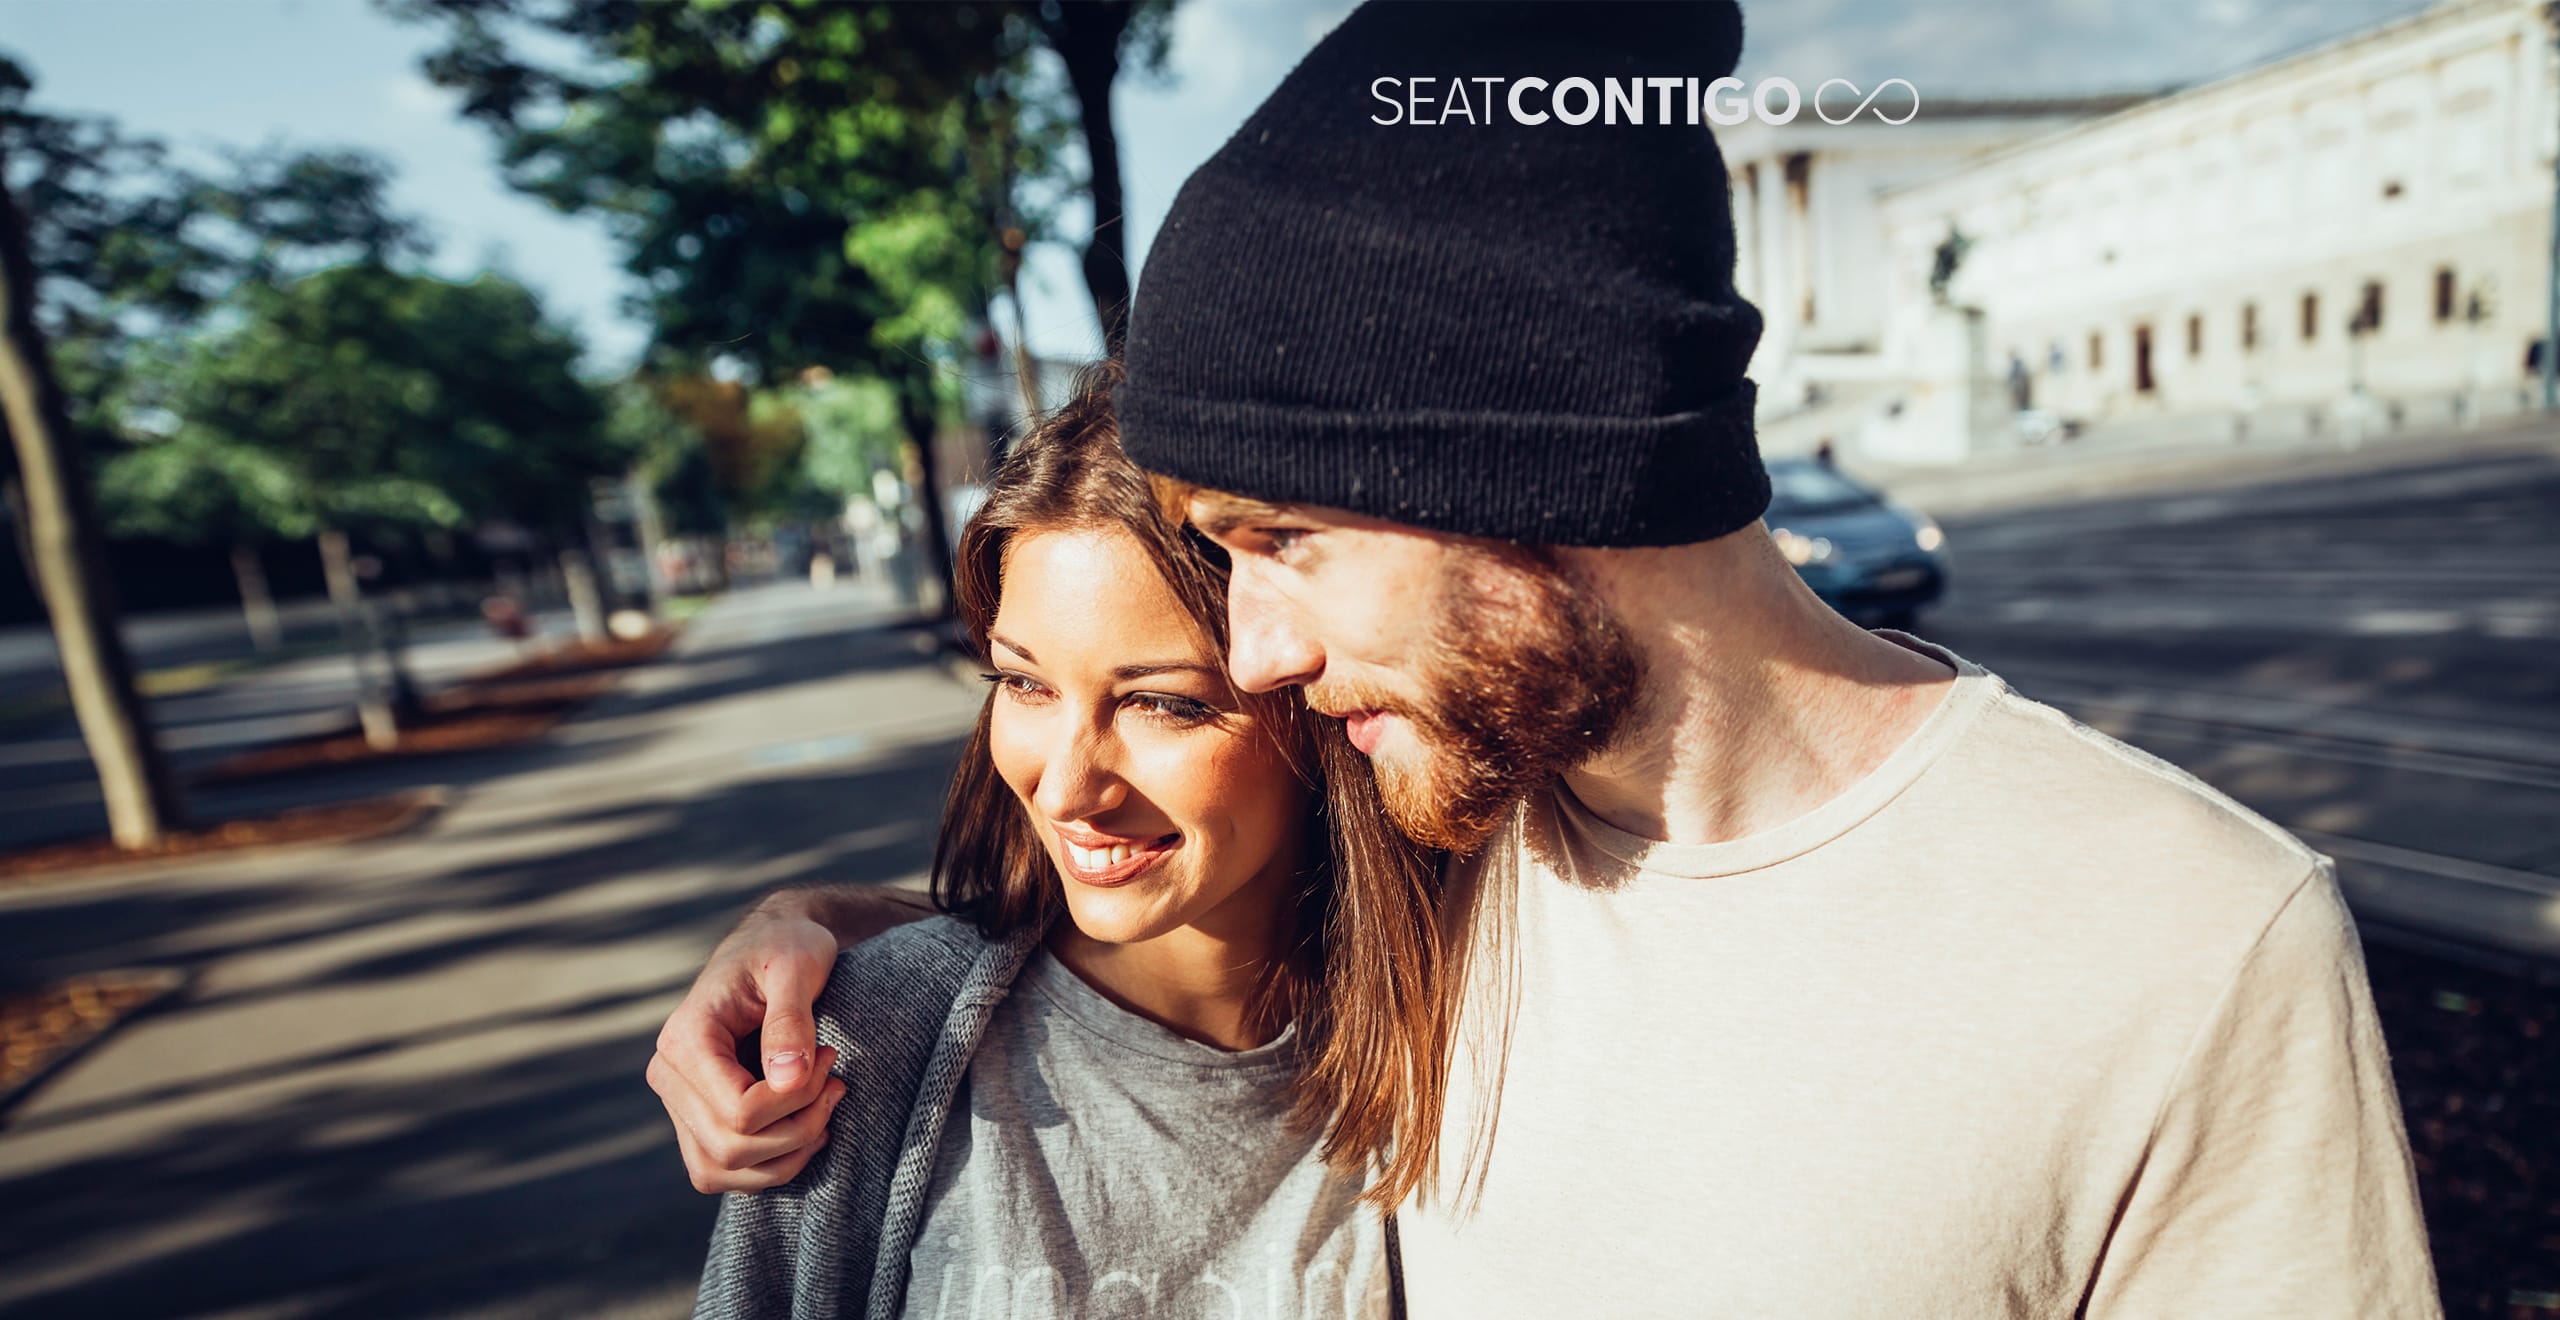 SEAT Service te permite viajar tranquilo y disfrutar de sus beneficios